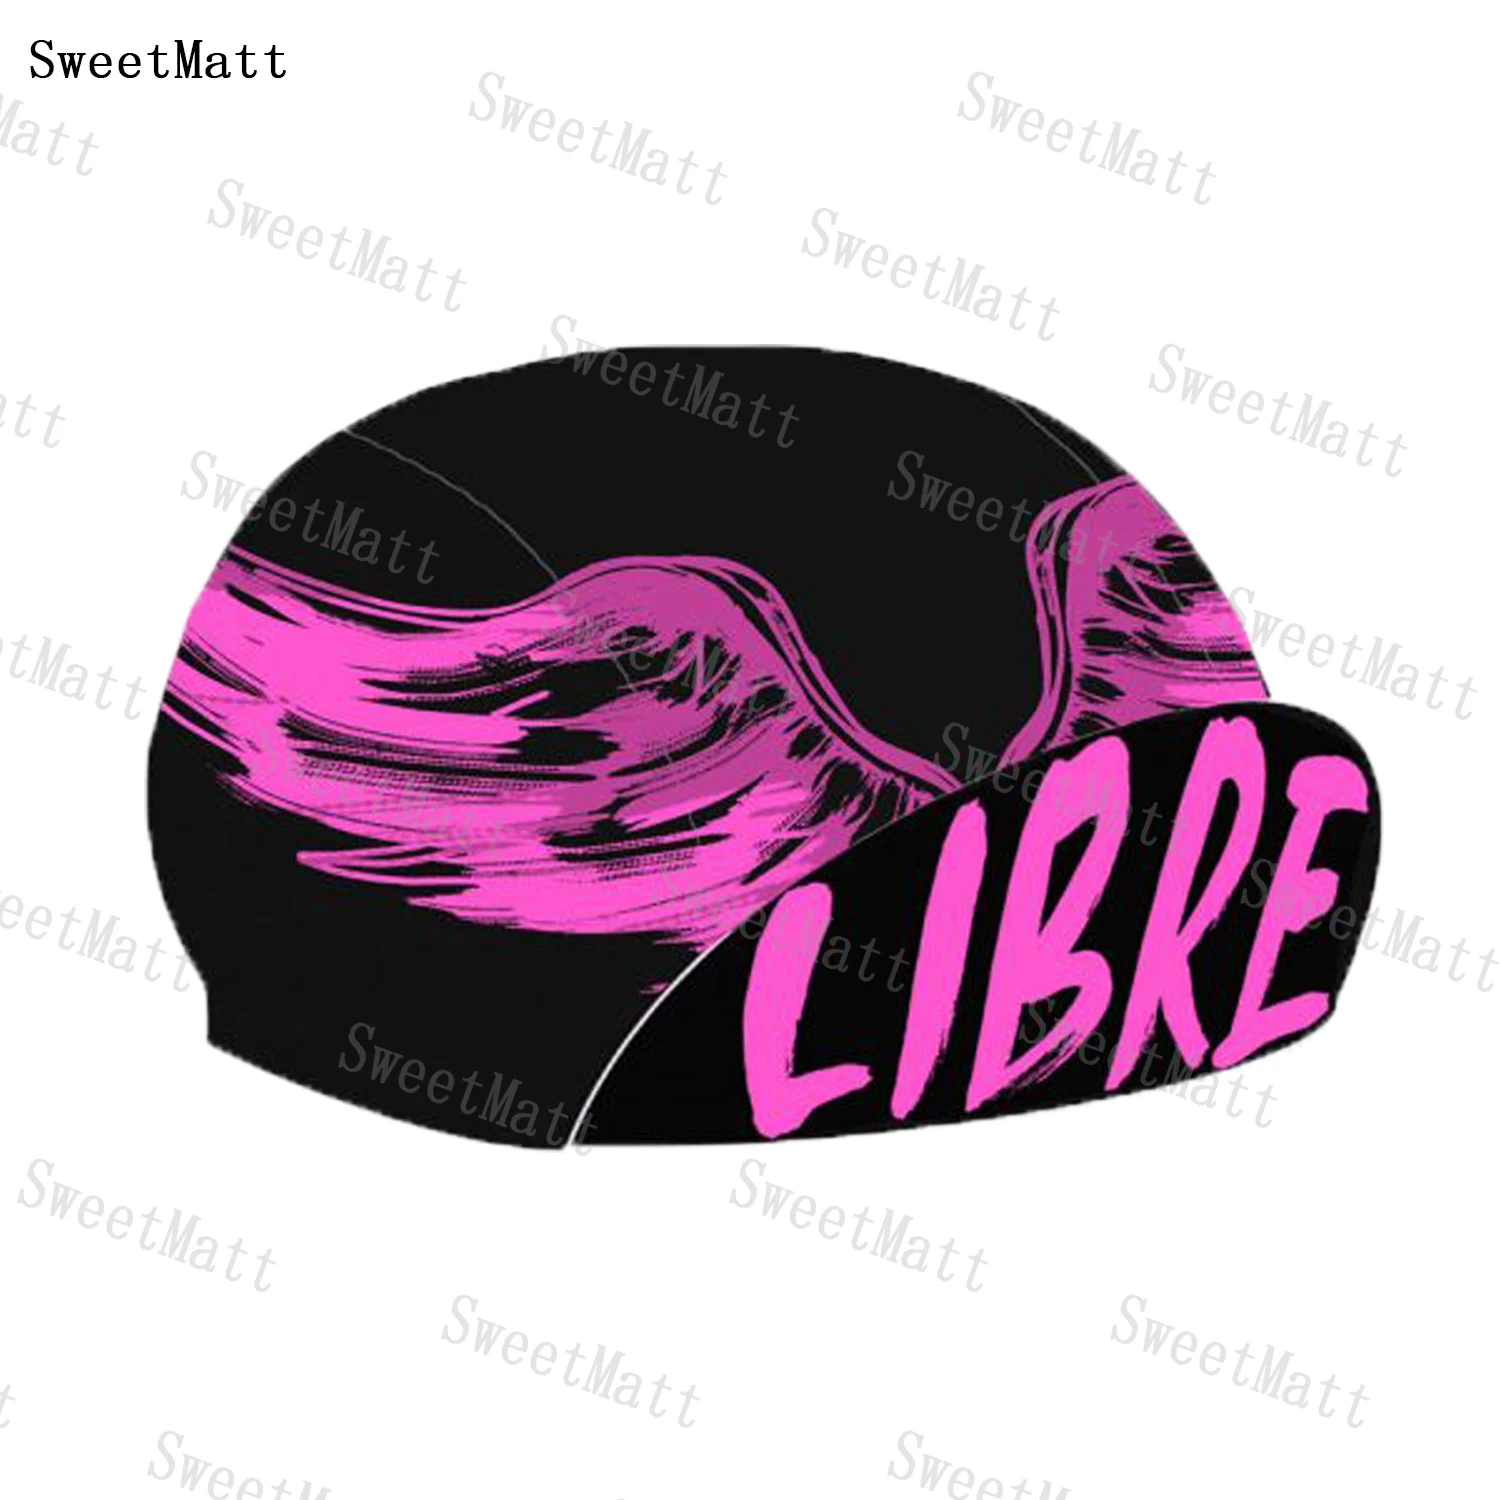 

Шапка-Балаклава женская из полиэстера, Классическая Ретро-шапка для велоспорта с большими розовыми крыльями, быстросохнущая дышащая эластичная, необходимая для шоссейного велосипеда, лето